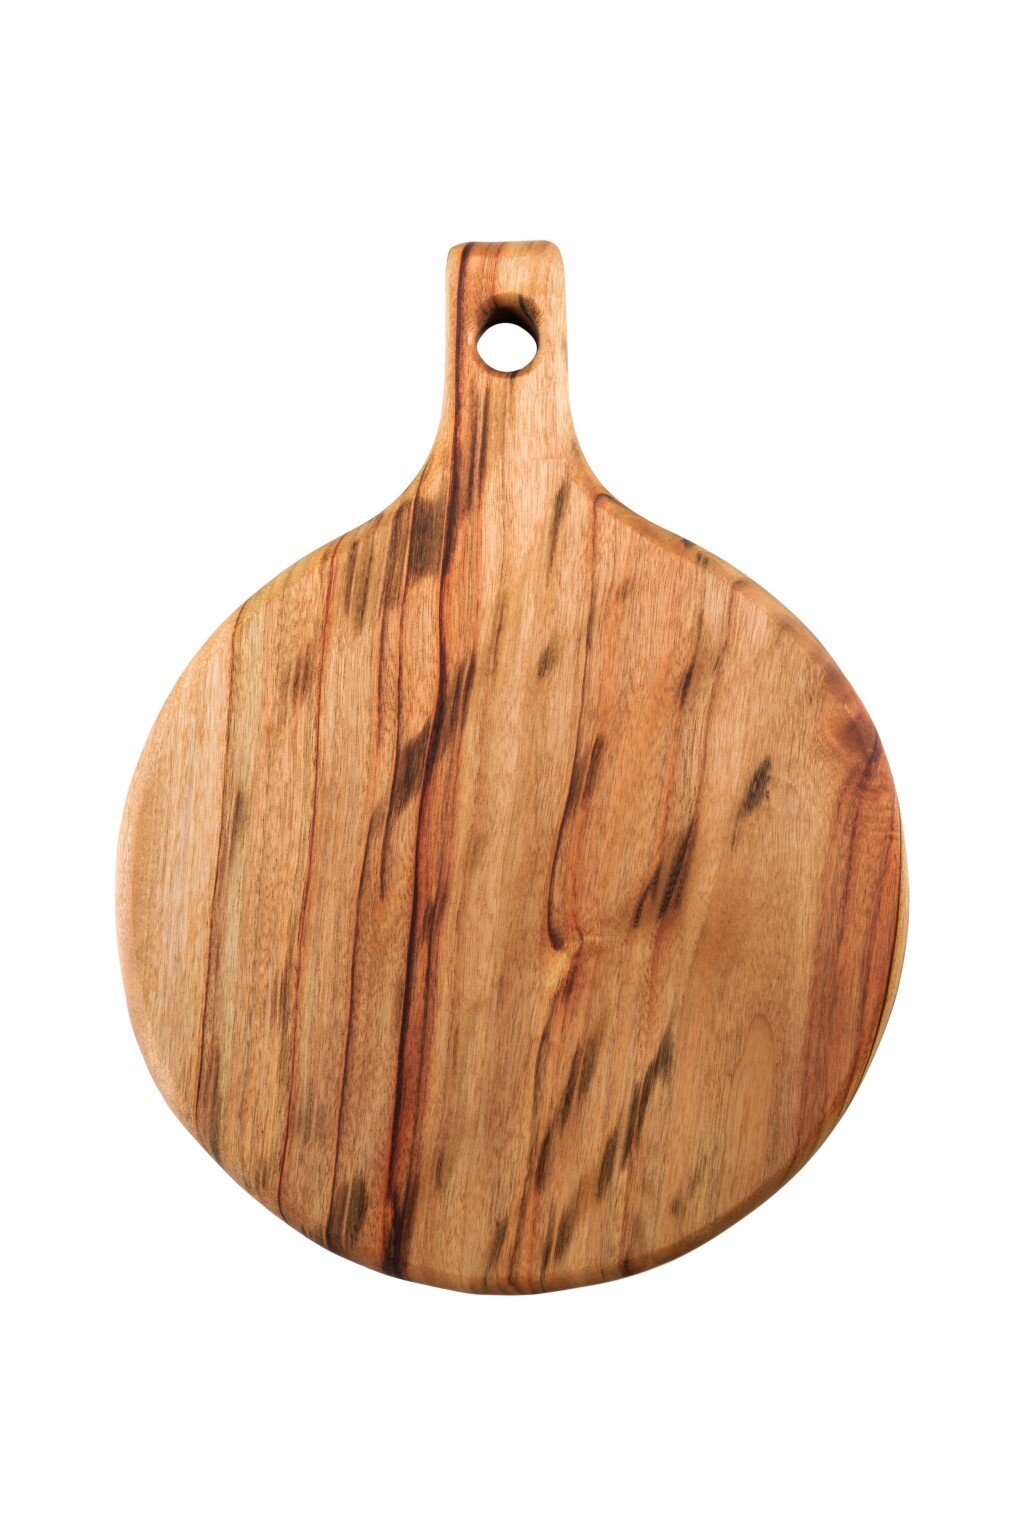 Fab Slabs Natural Wood Camphor Laurel Large Premium Anti-Bacterial Cutting Board